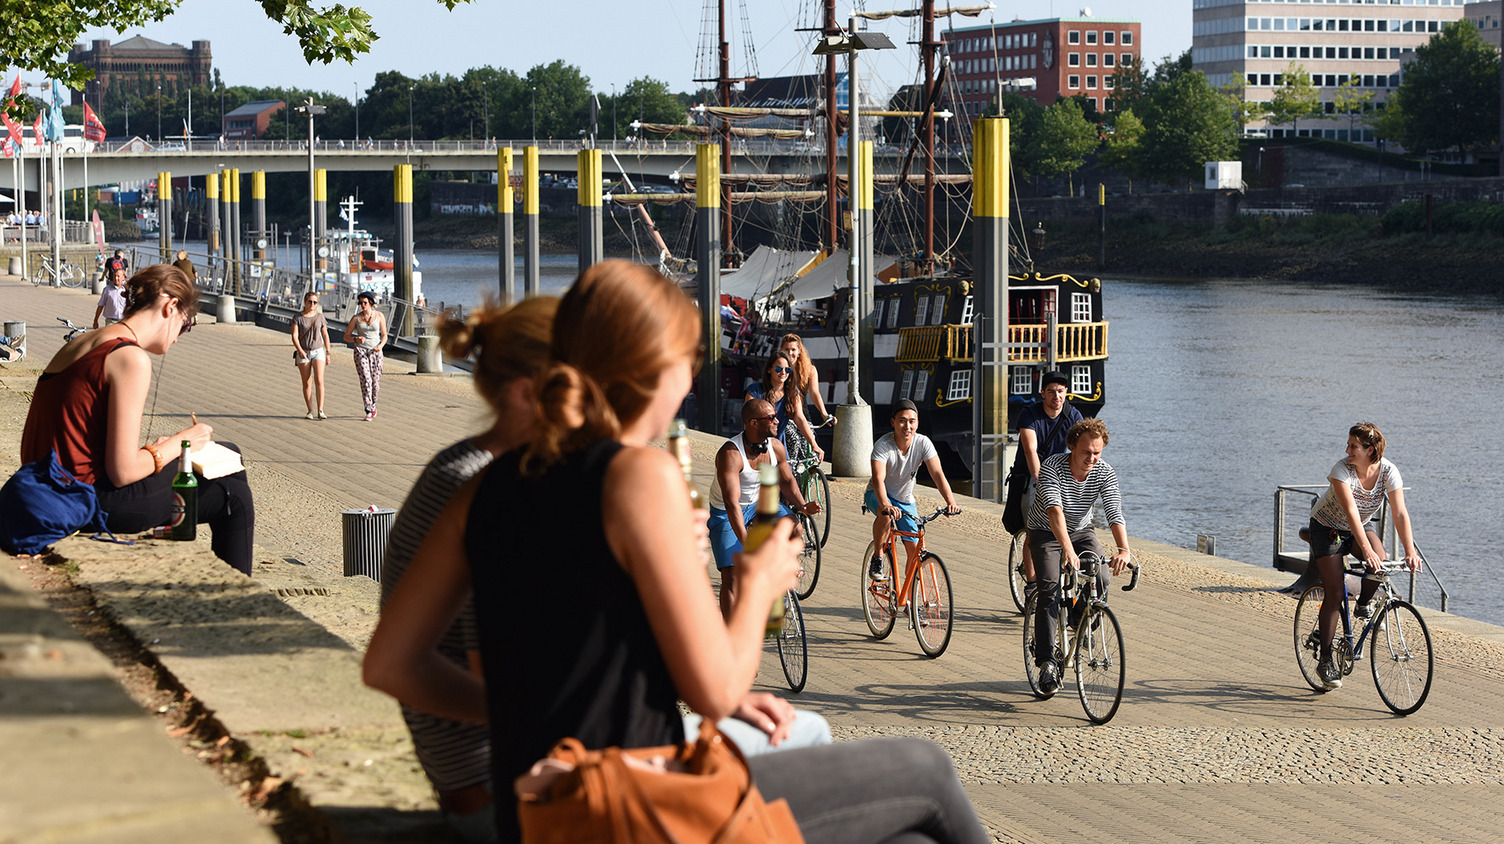 Personen erholen sich am Ufer der Weser in der Innenstadt